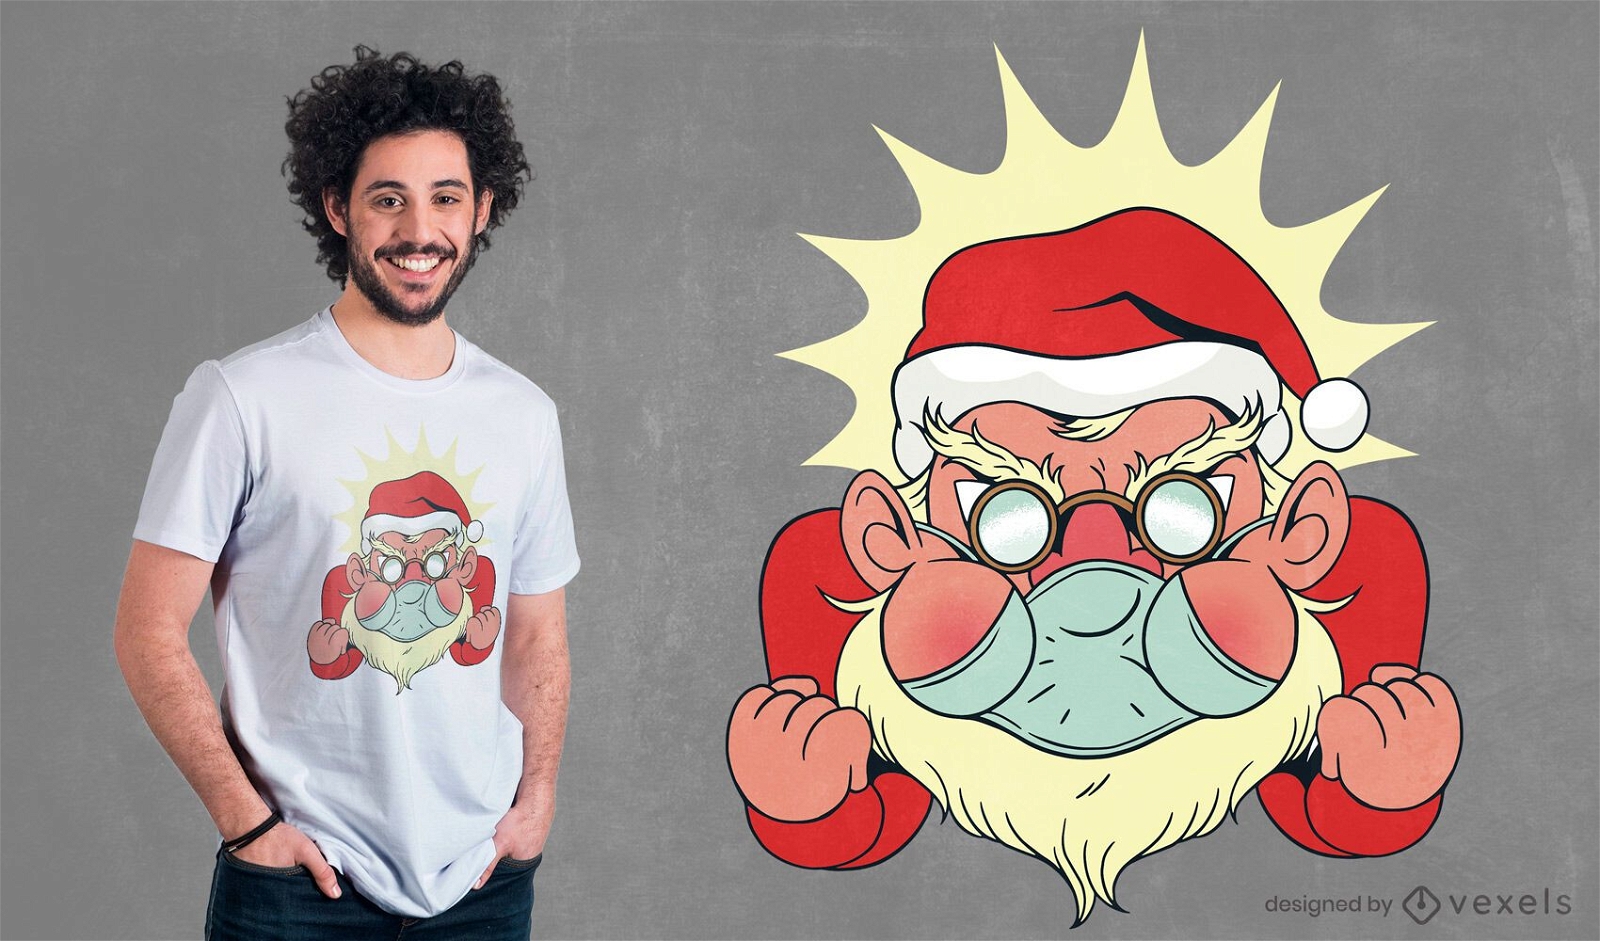 Angry santa facemask t-shirt design